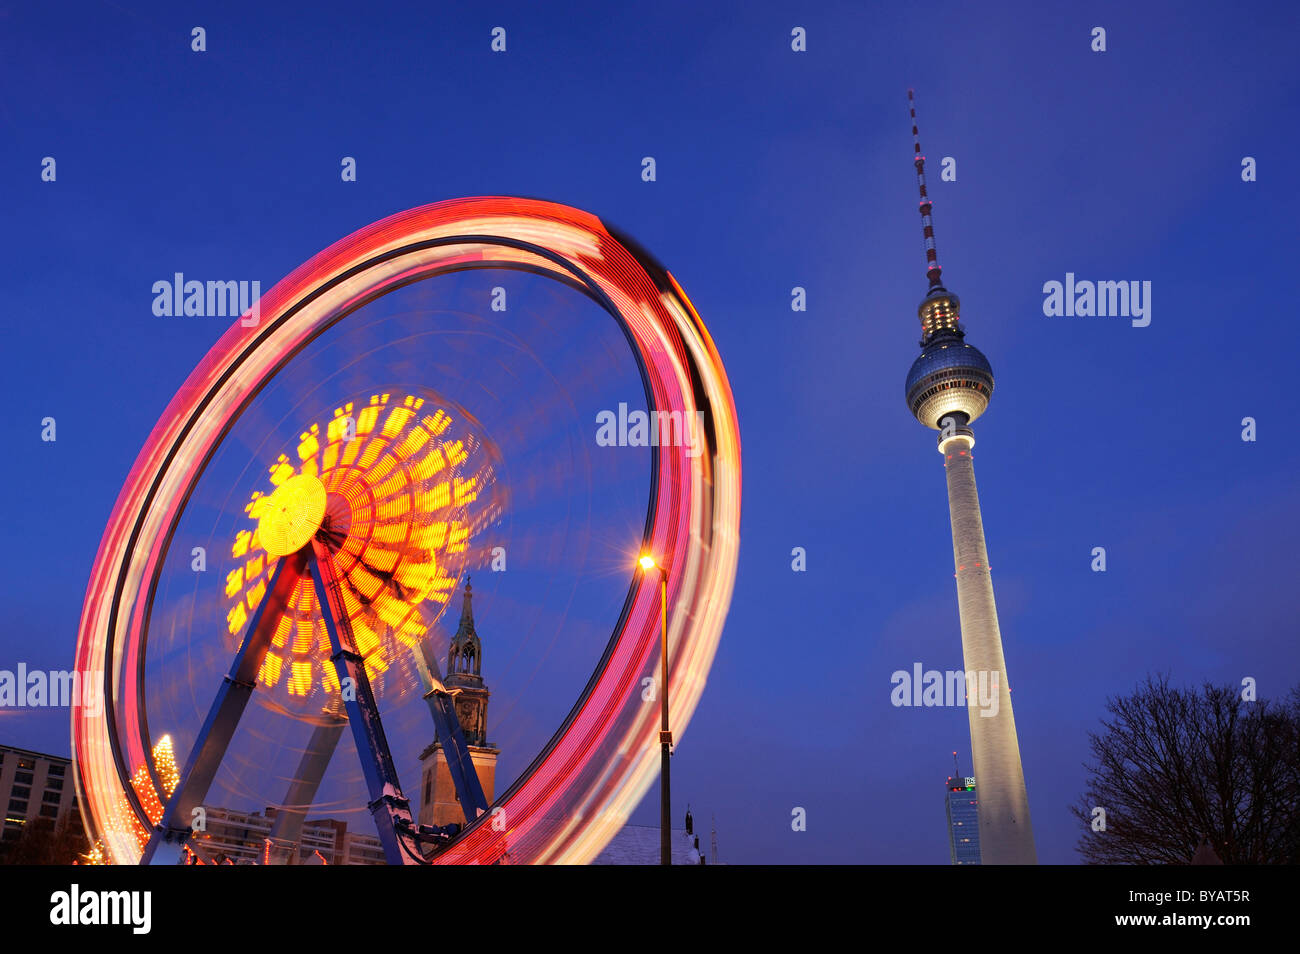 La noria en movimiento, con la Torre de Televisión de Alexanderplatz, Berlín, Alemania, Europa Foto de stock